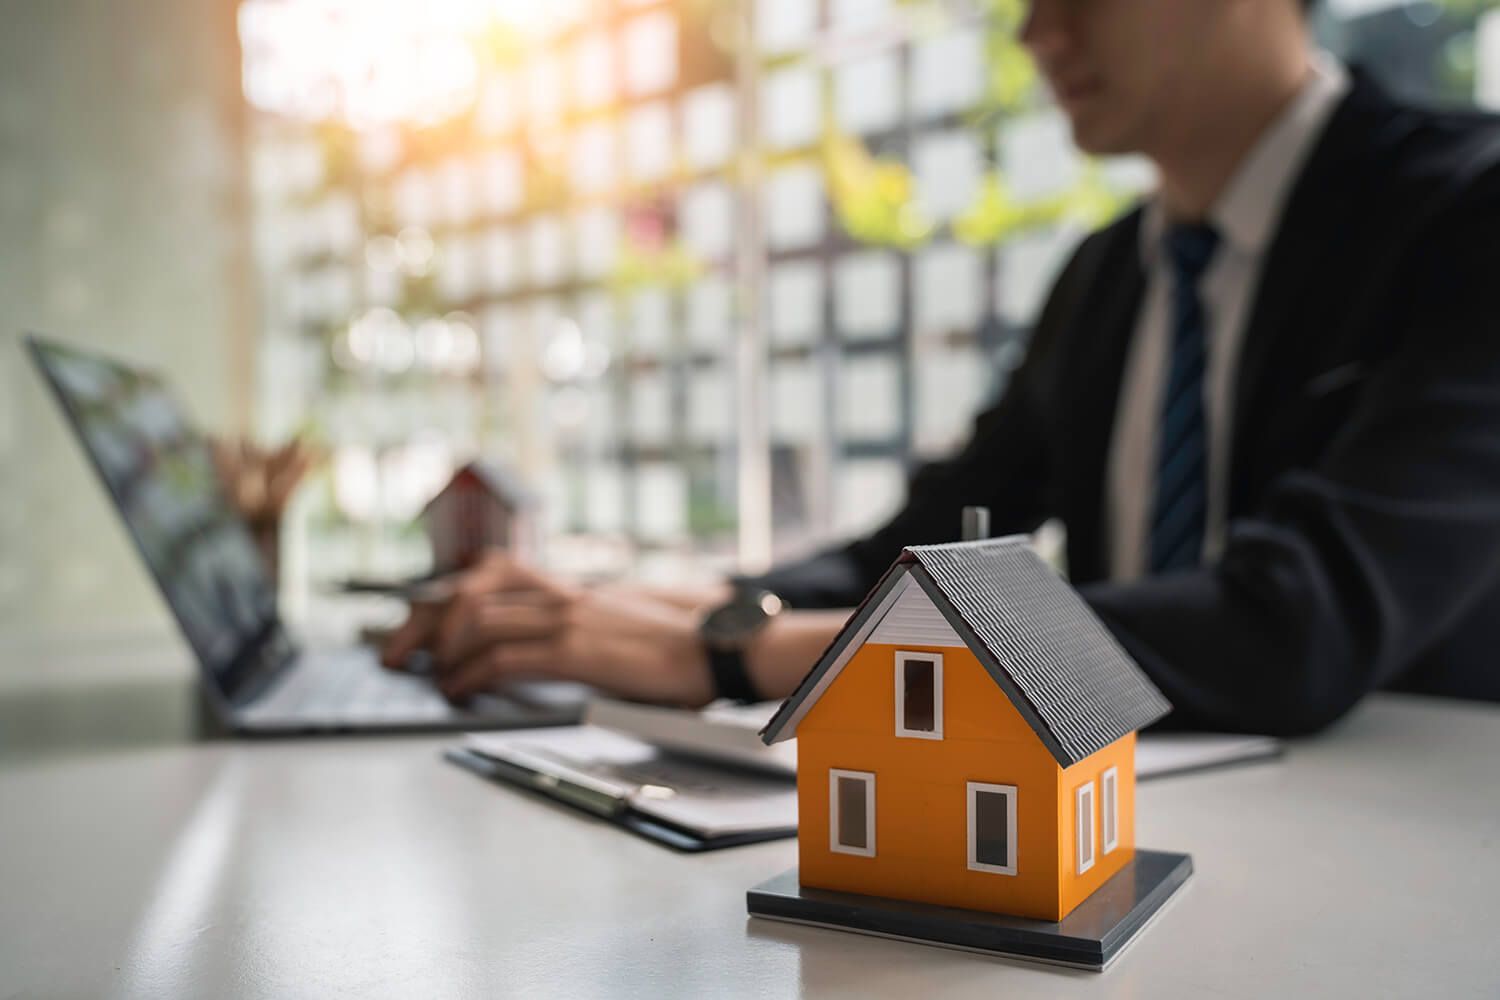 Agenzia immobiliare online: come funziona e perché sceglierla?